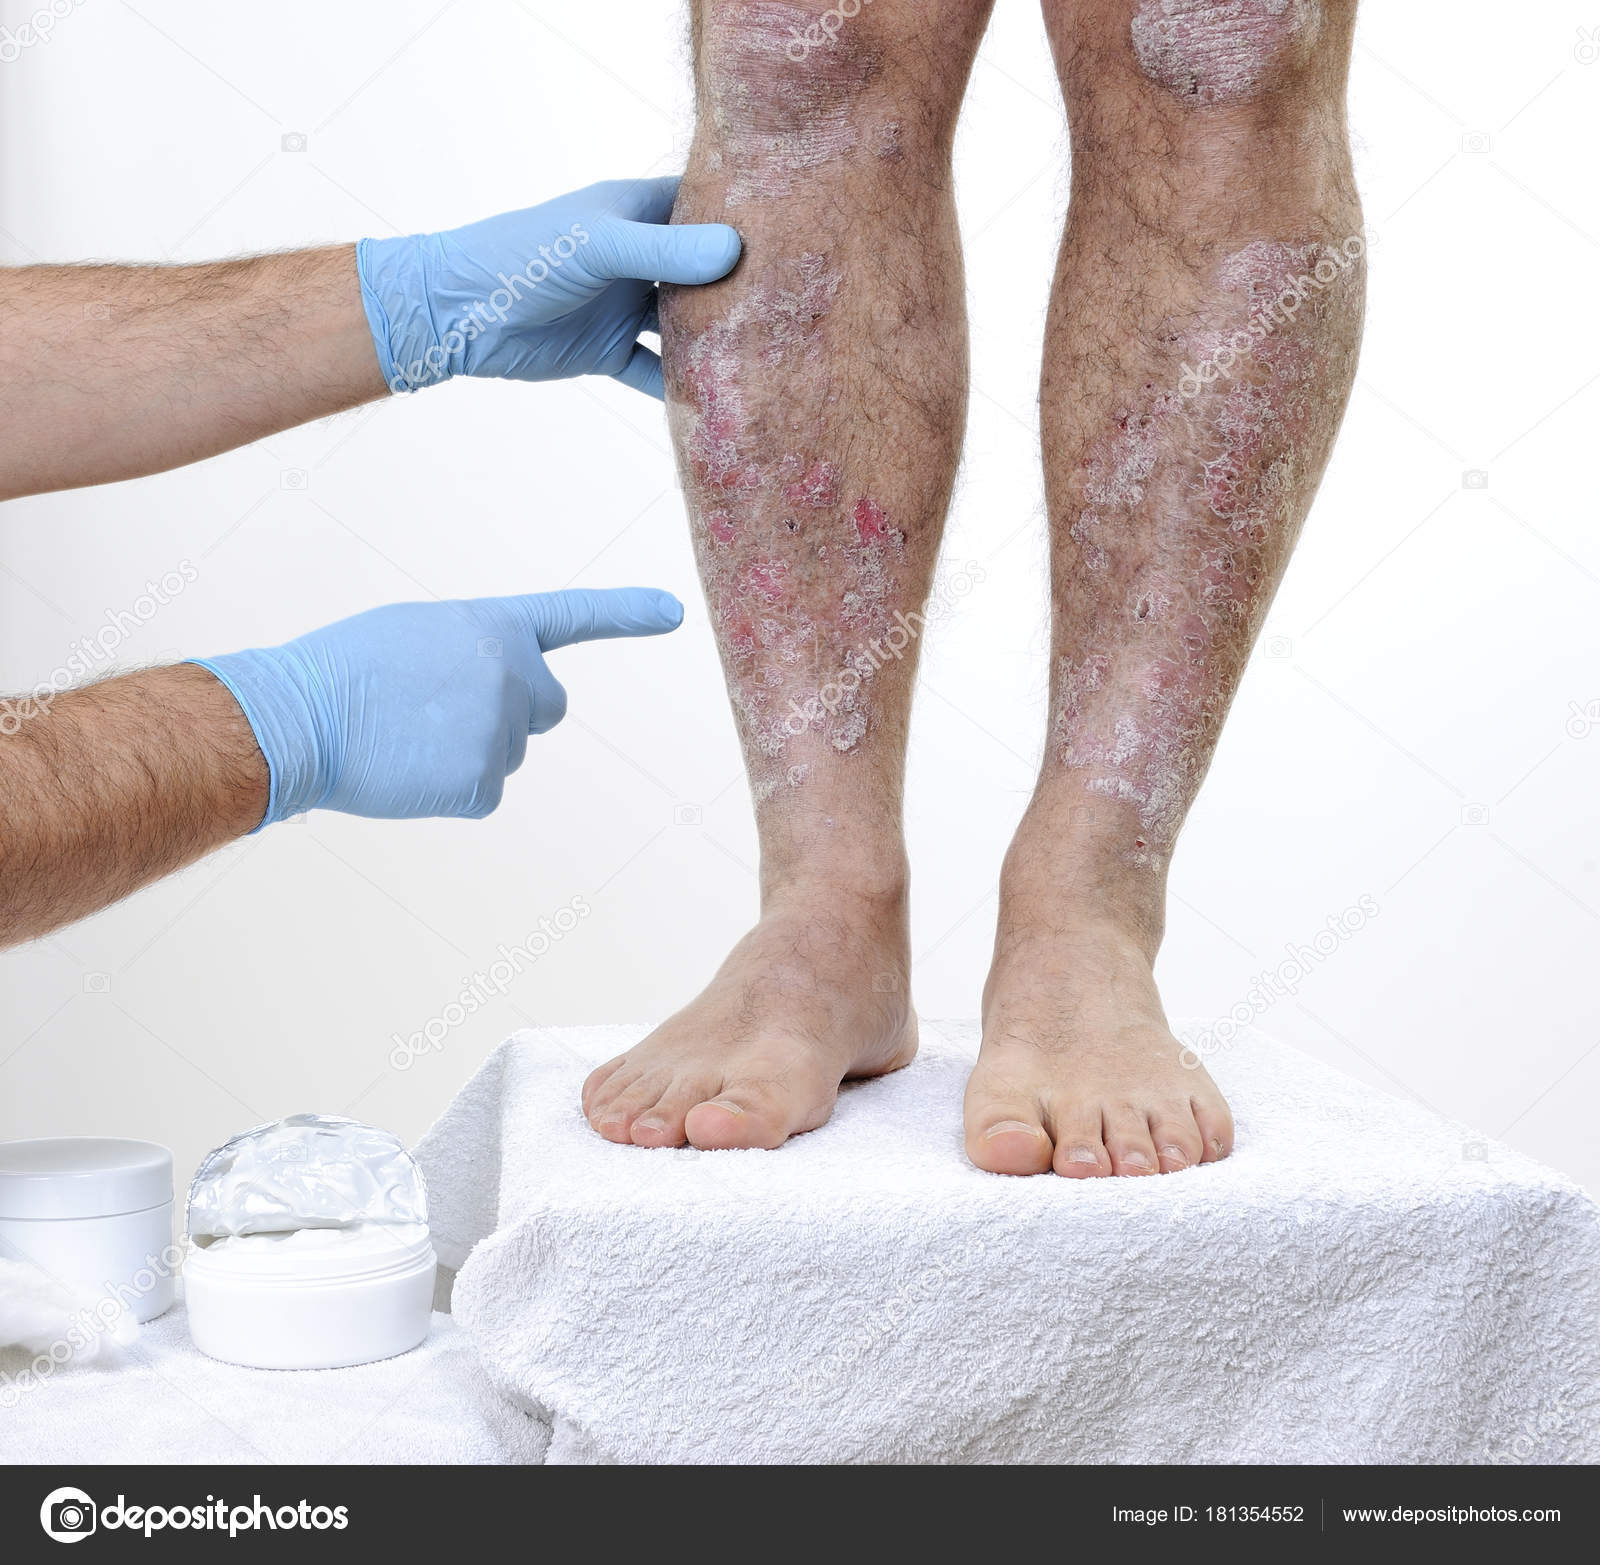 så meget Tage af eftertænksom Hudlægen besøger en voksen mand med psoriasis i benene — Stock-foto ©  francescomoufotografo #181354552